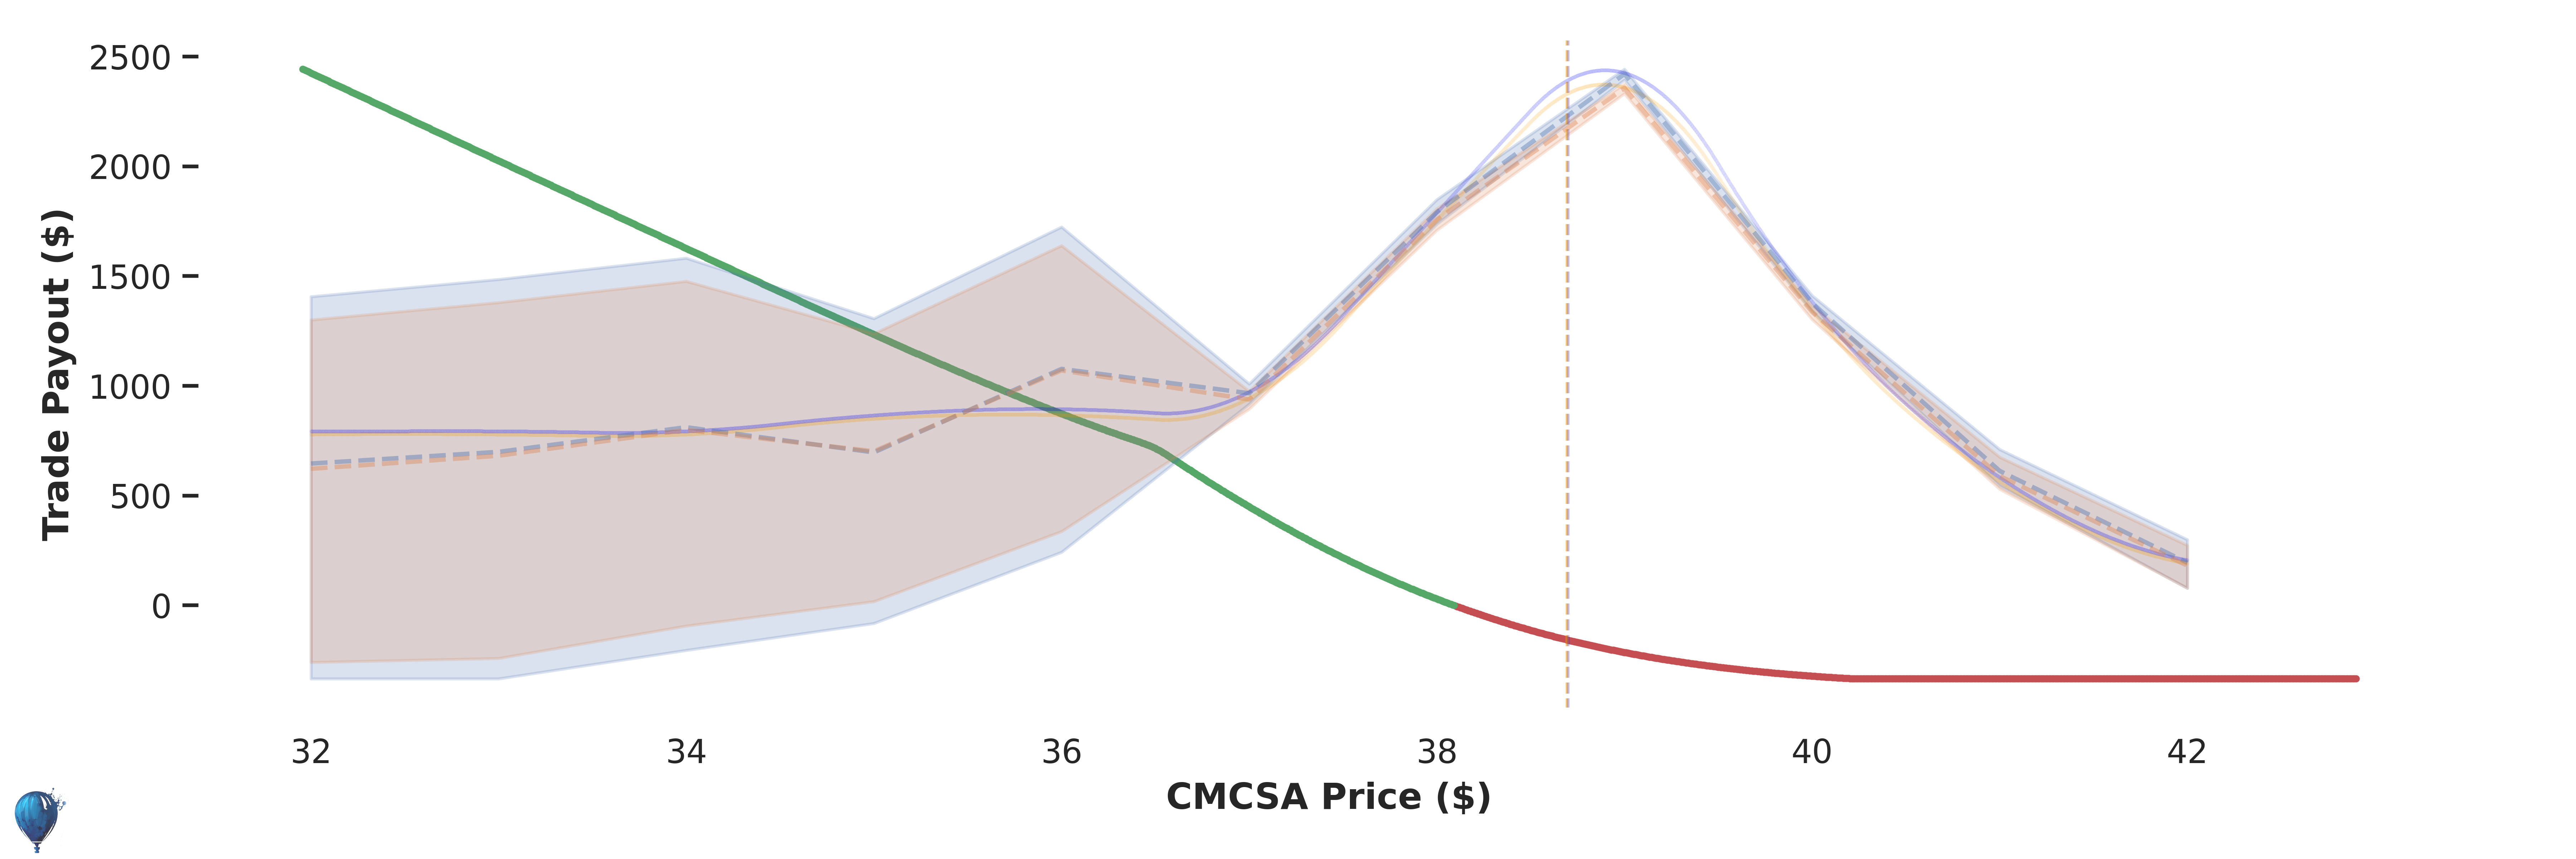 CMCSA trade payout at expiration